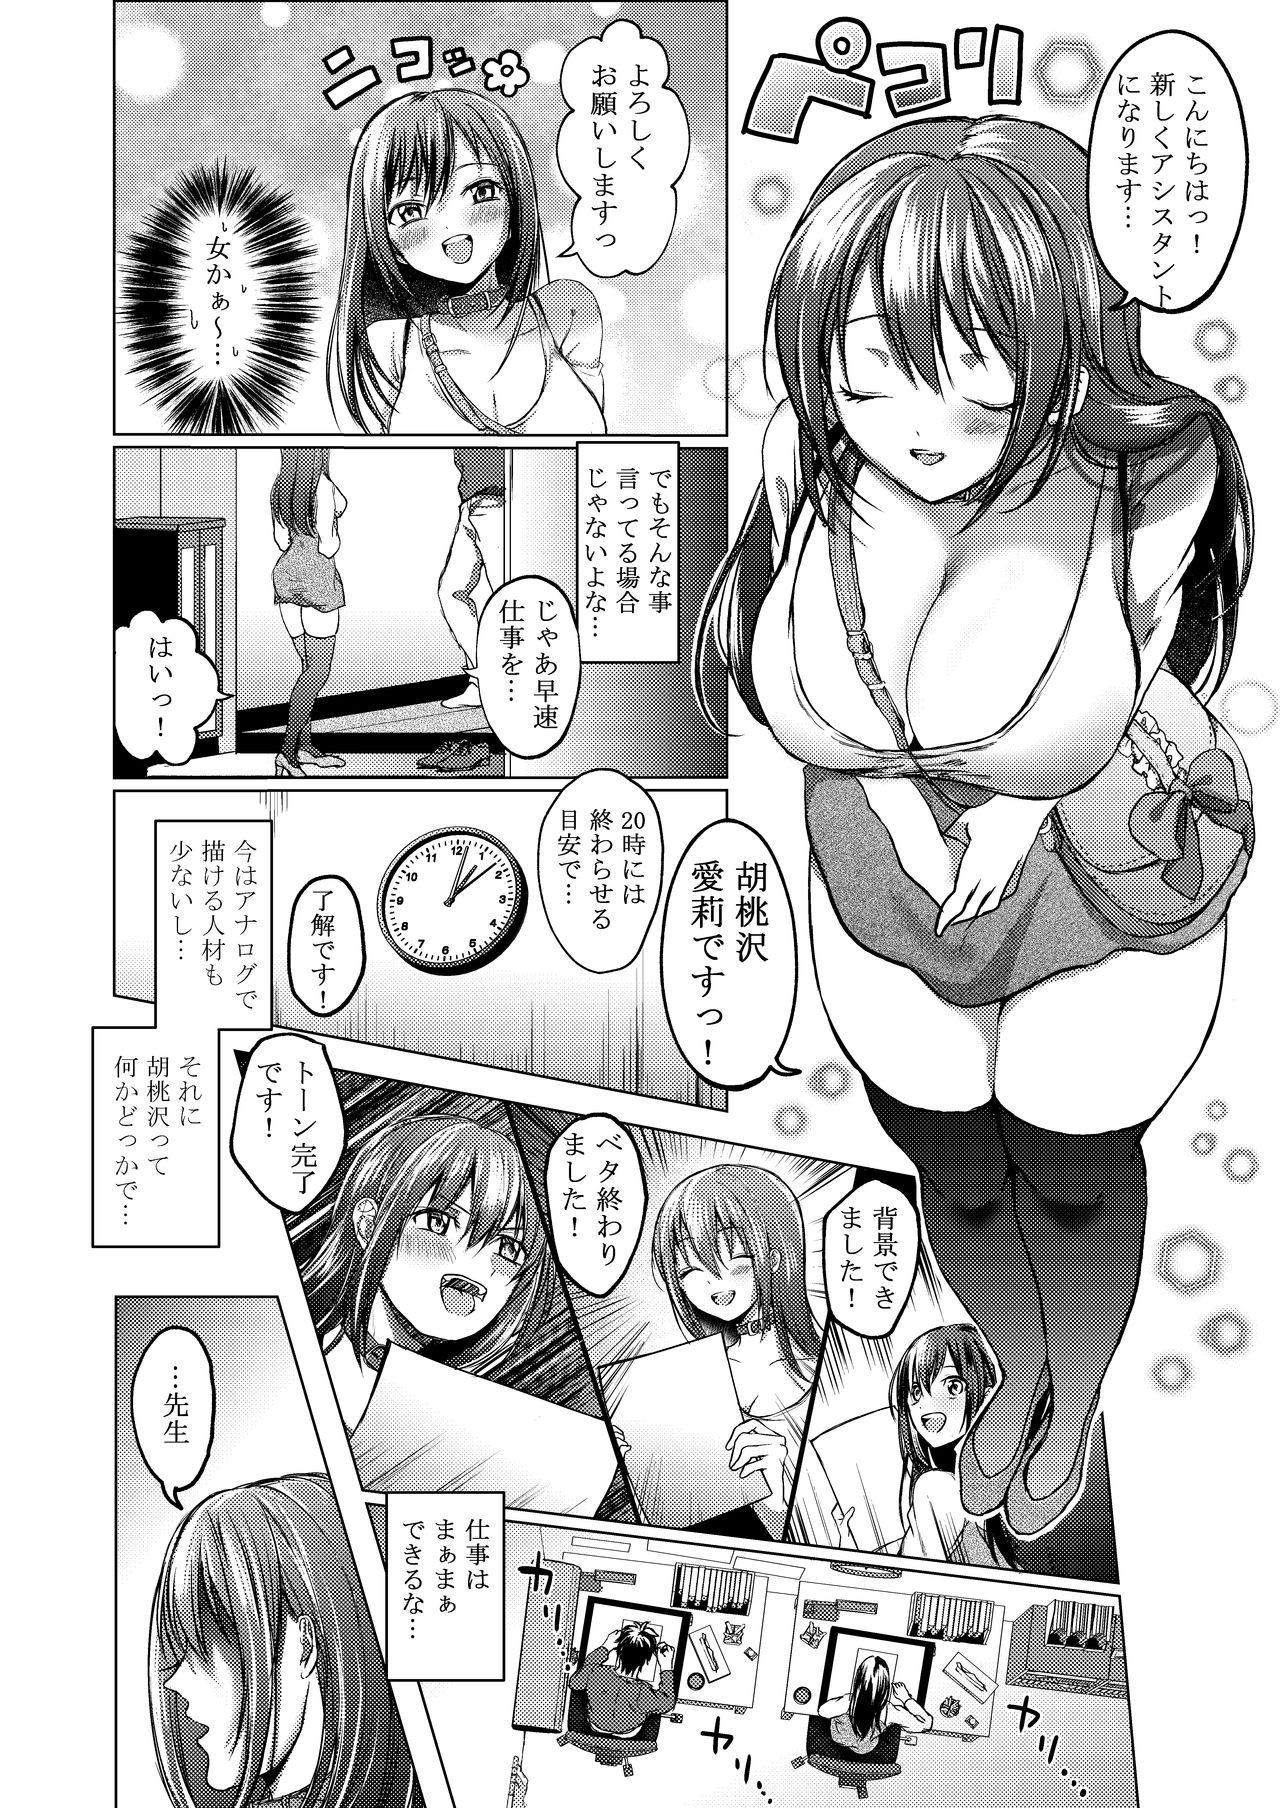 Ecchi na Ero Manga no Tsukurikata 4